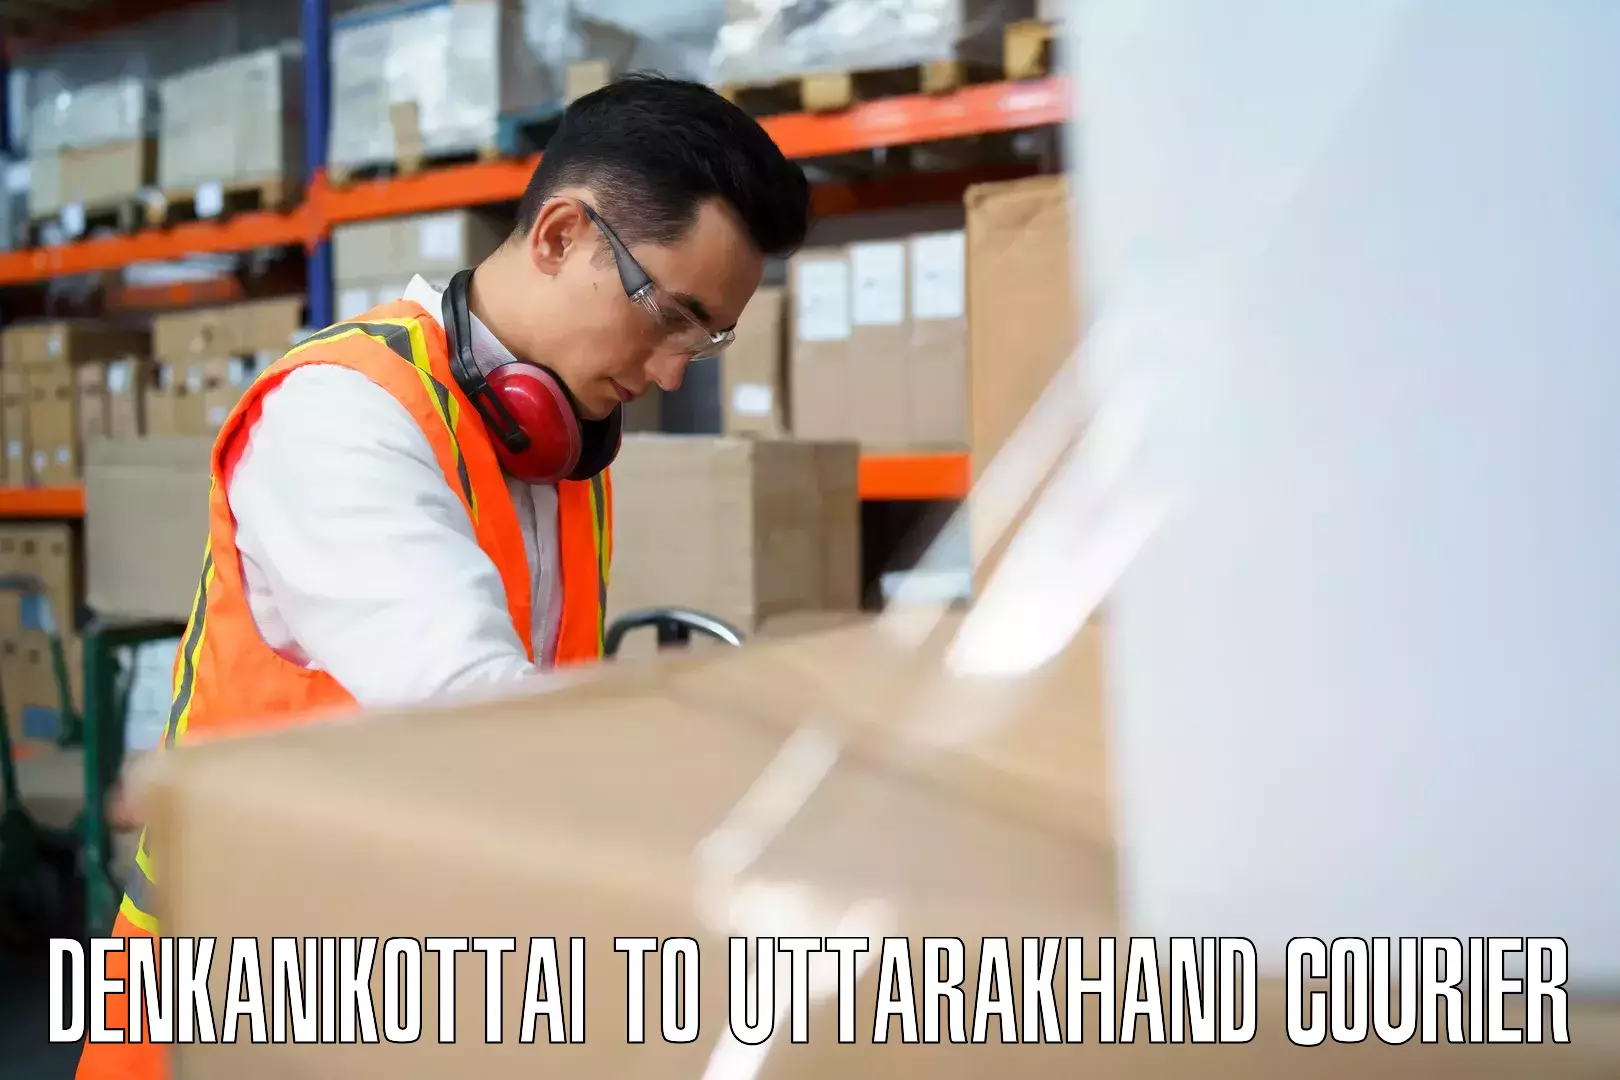 Urban luggage shipping Denkanikottai to Uttarakhand